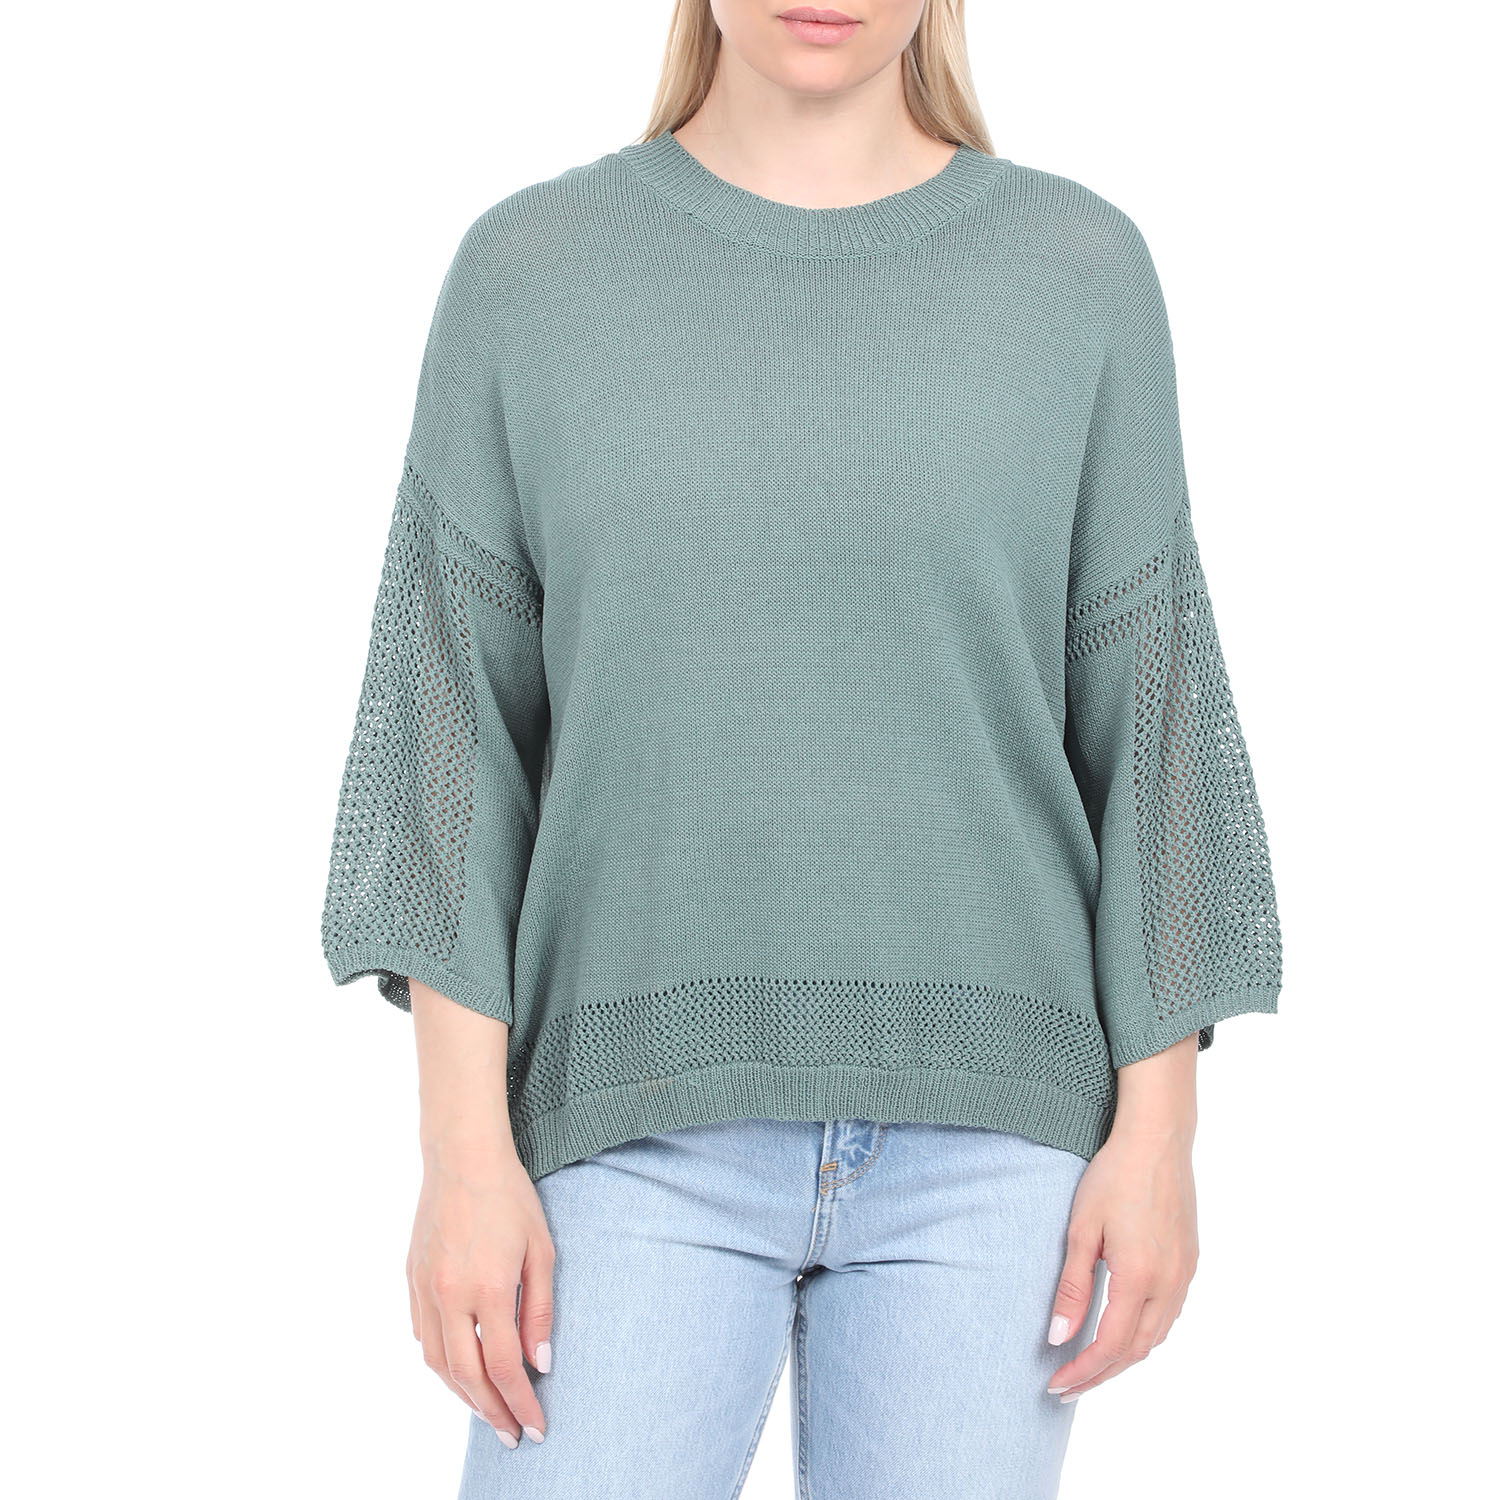 Γυναικεία/Ρούχα/Πλεκτά-Ζακέτες/Πουλόβερ ALE - Γυναικεία πλεκτή μπλούζα 'ALE πράσινη